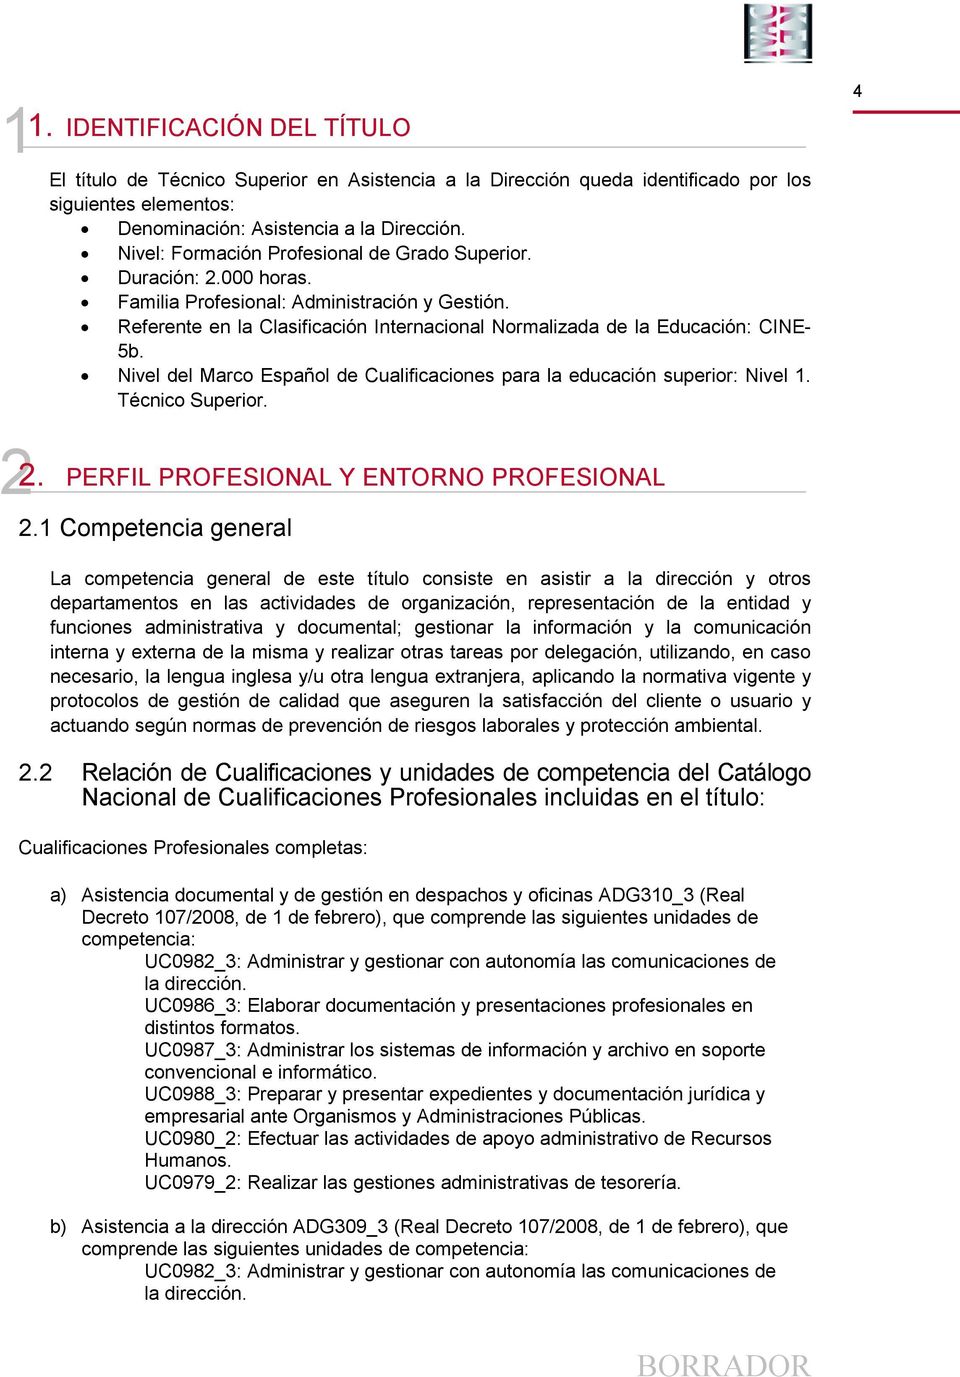 Nivel del Marco Español de Cualificaciones para la educación superior: Nivel 1. Técnico Superior. 4 2 2. PERFIL PROFESIONAL Y ENTORNO PROFESIONAL 2.